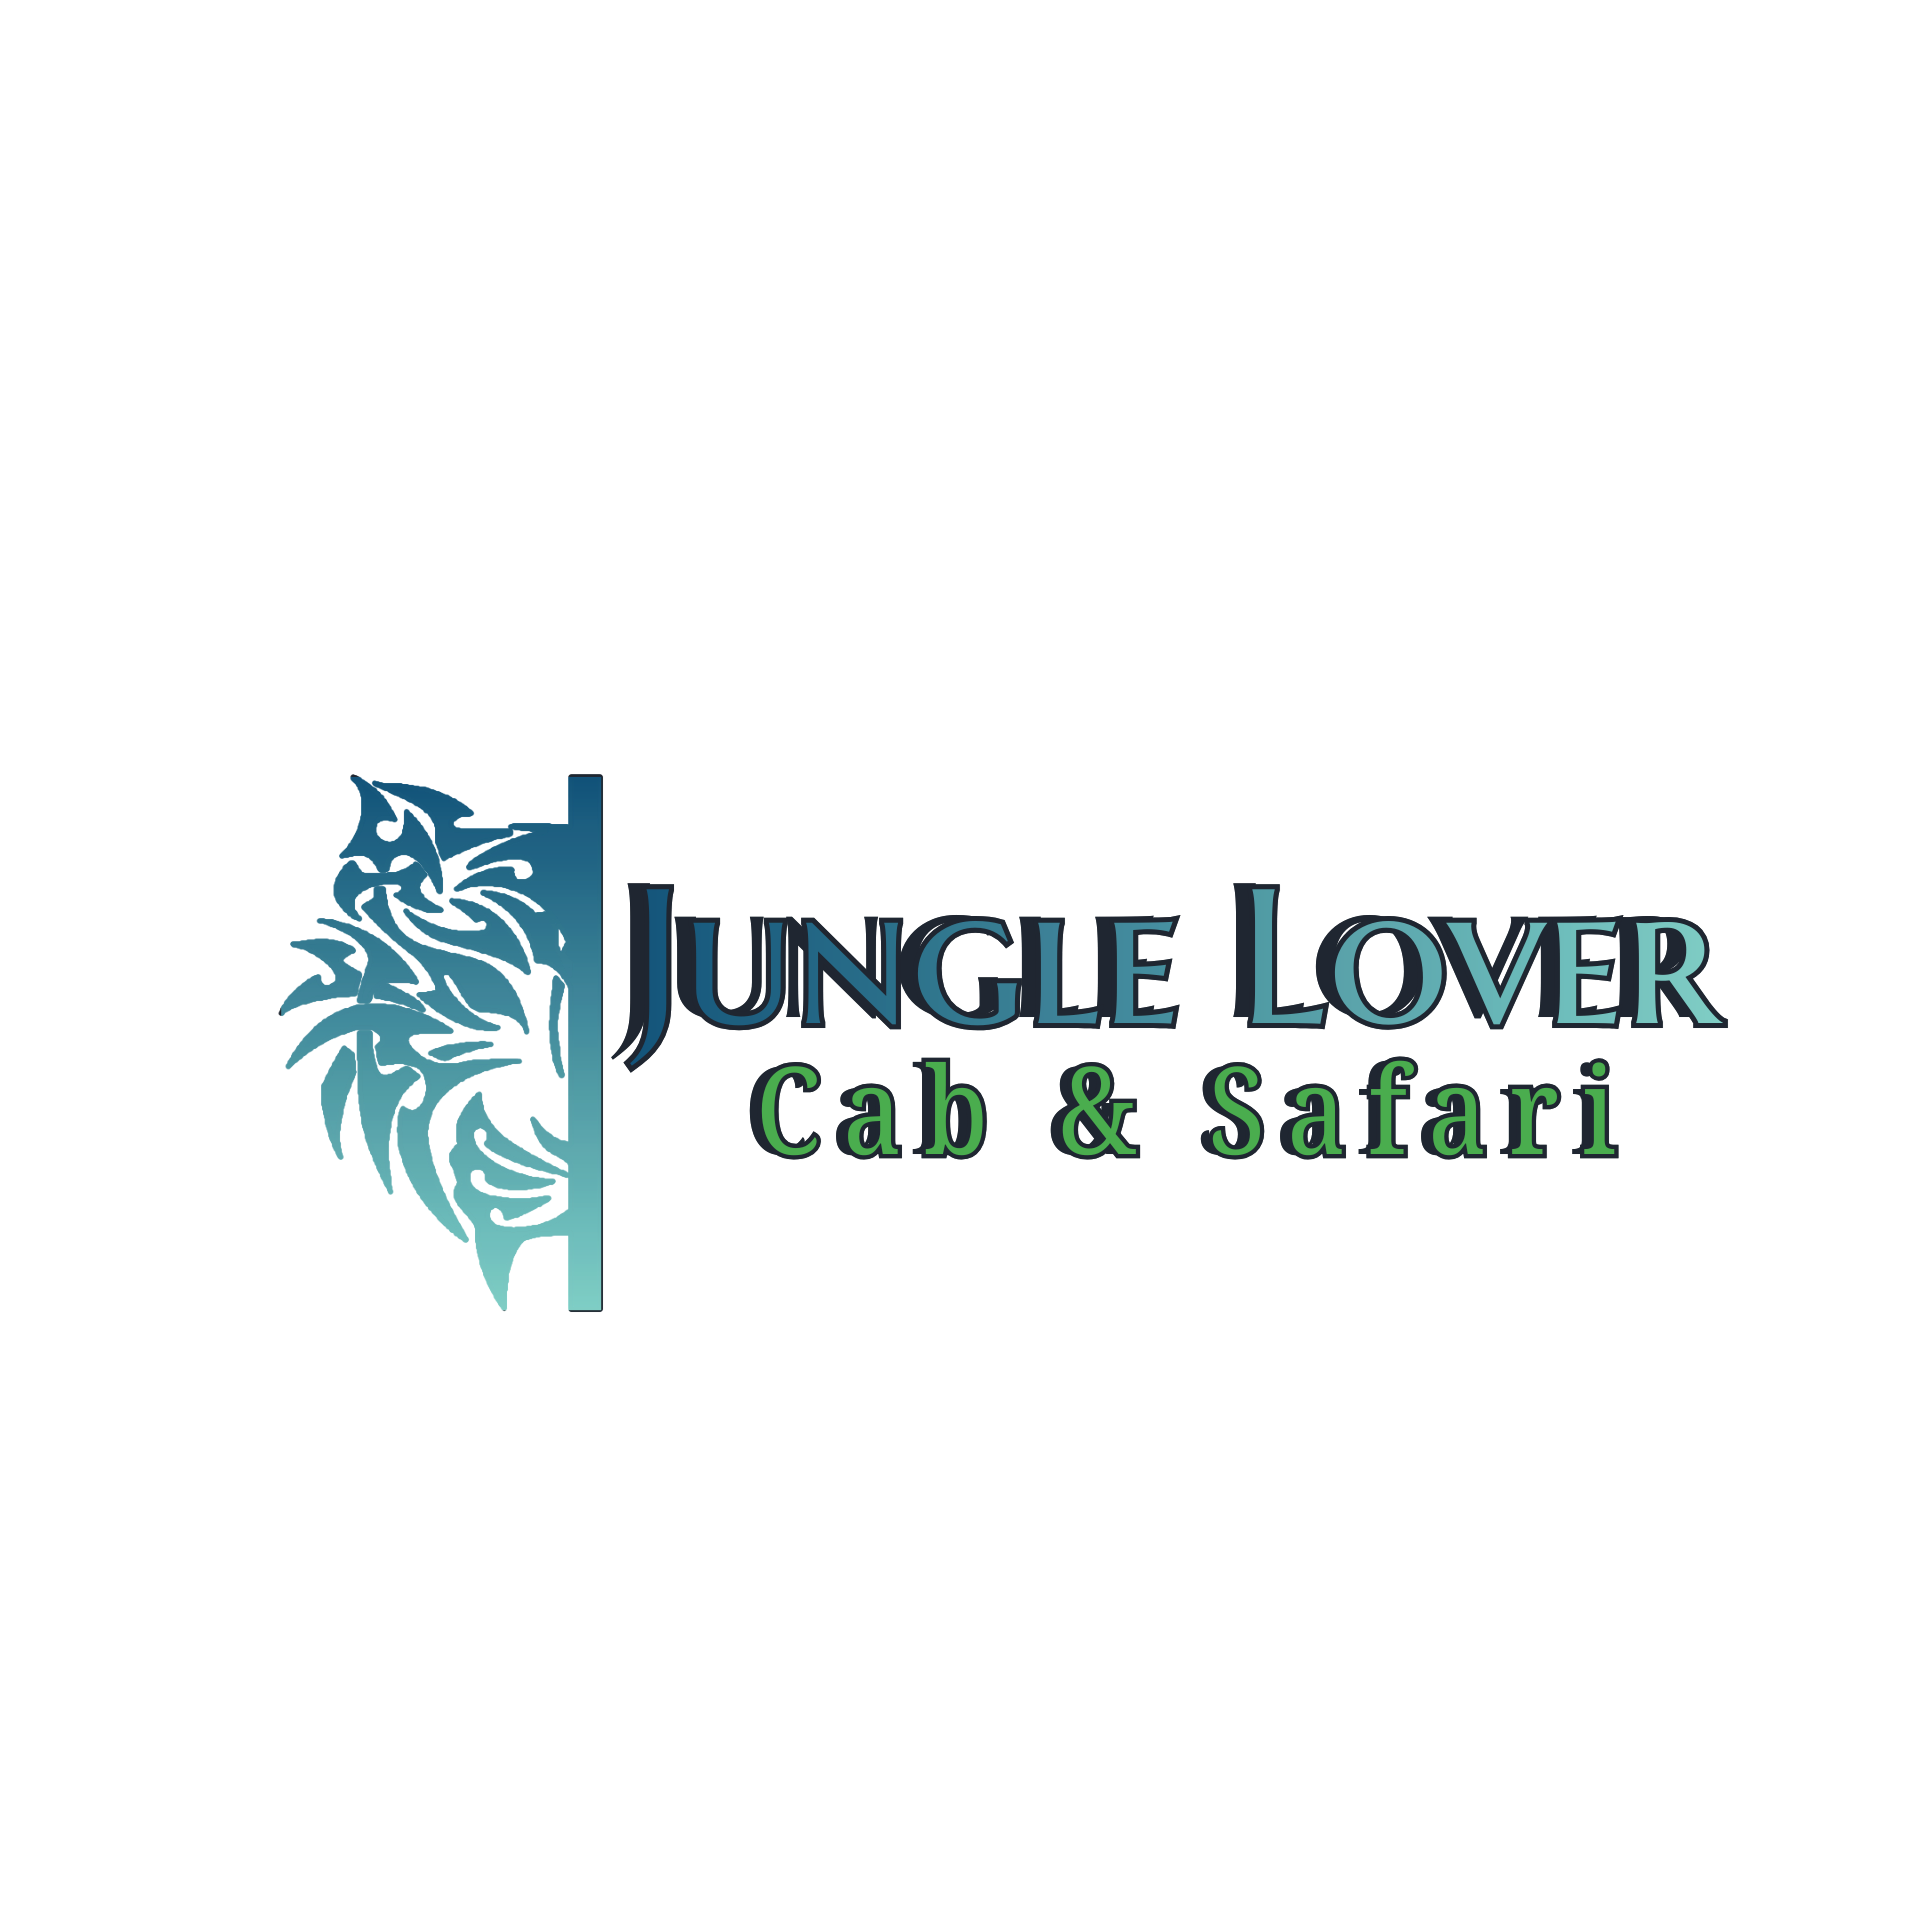 Jungle Lover Cab & Safa..